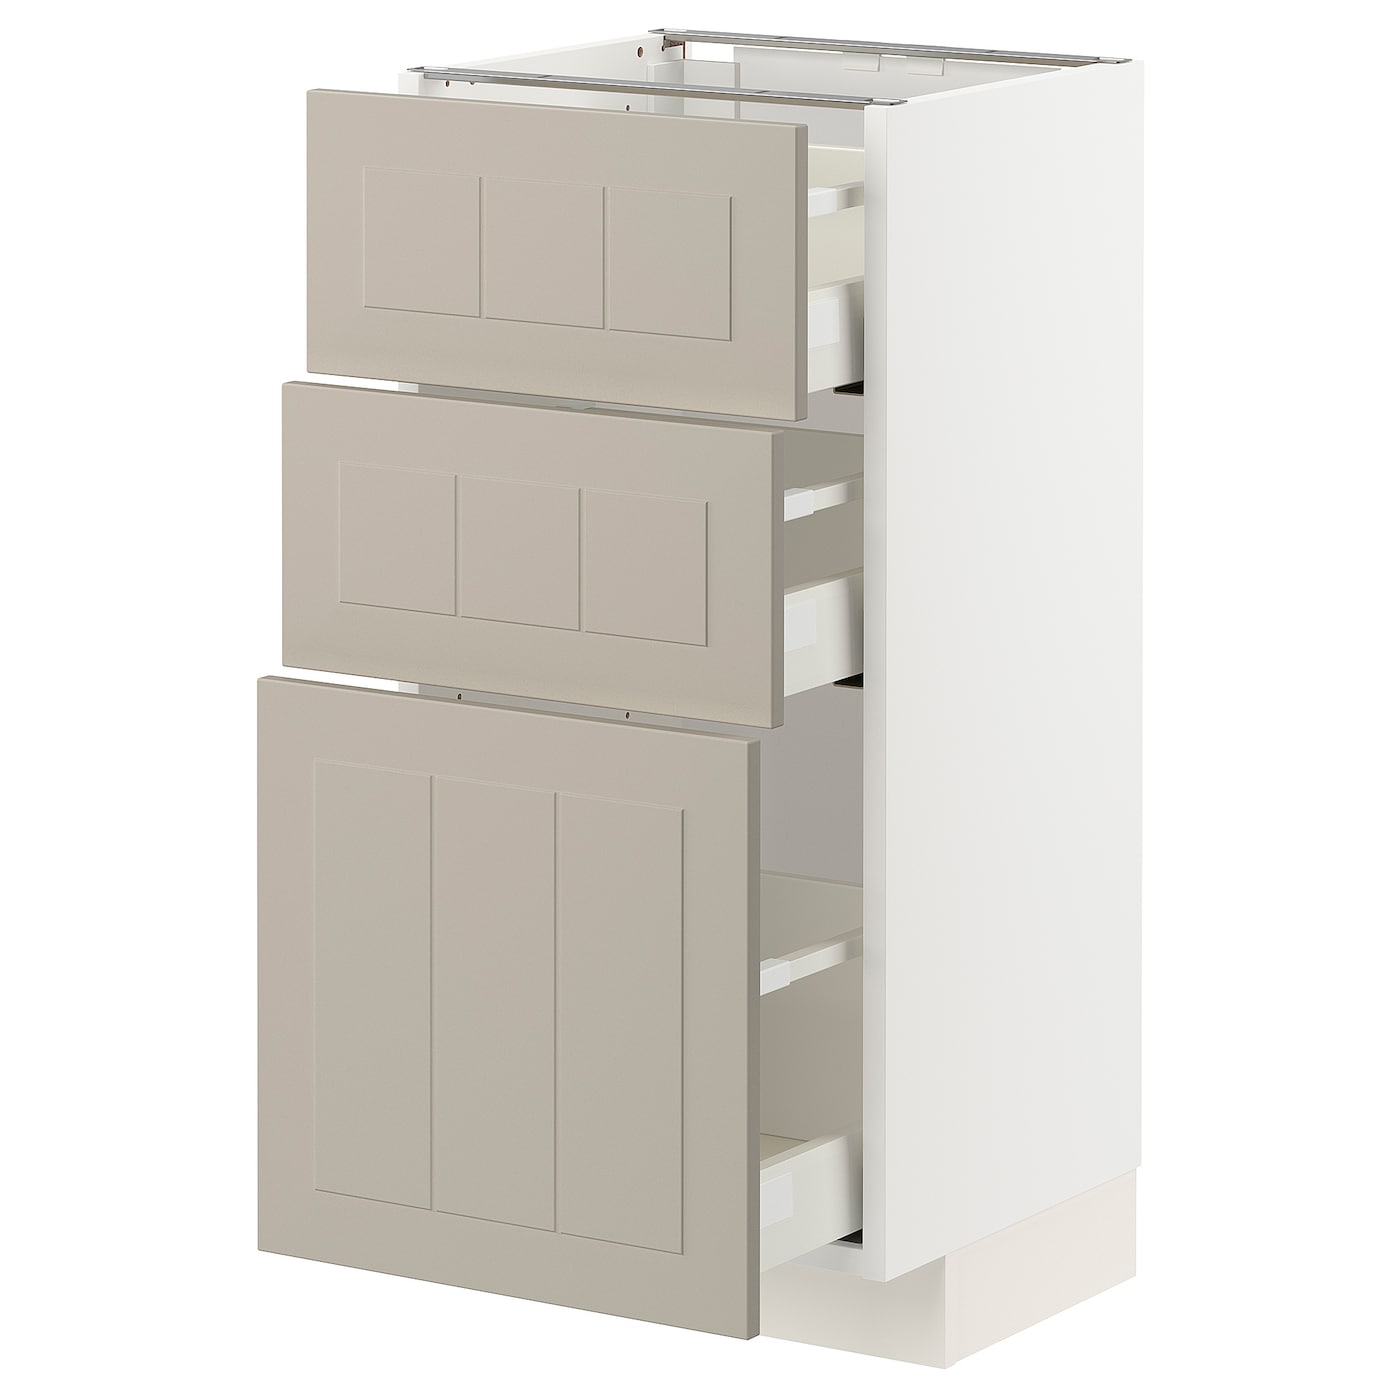 Напольный шкаф - IKEA METOD MAXIMERA, 88x39,5x40см, белый/темно-бежевый, МЕТОД МАКСИМЕРА ИКЕА